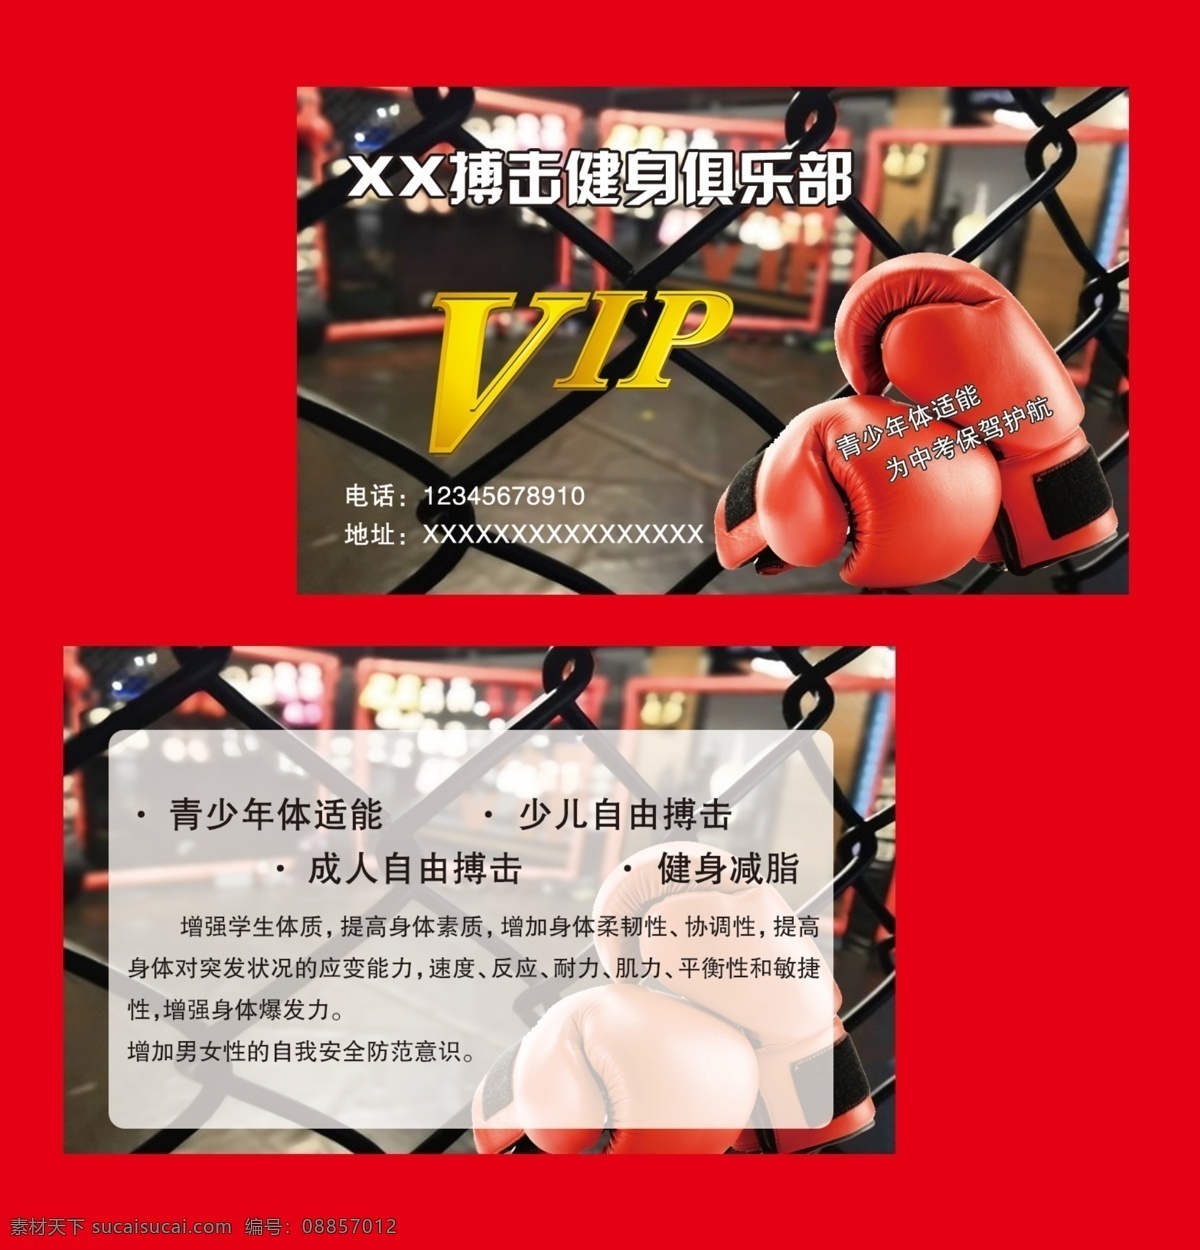 vip卡 积分卡 名片设计 运动 健康 健身 减肥 拳击 训练场地 自由搏击 青少年 俱乐部 分层